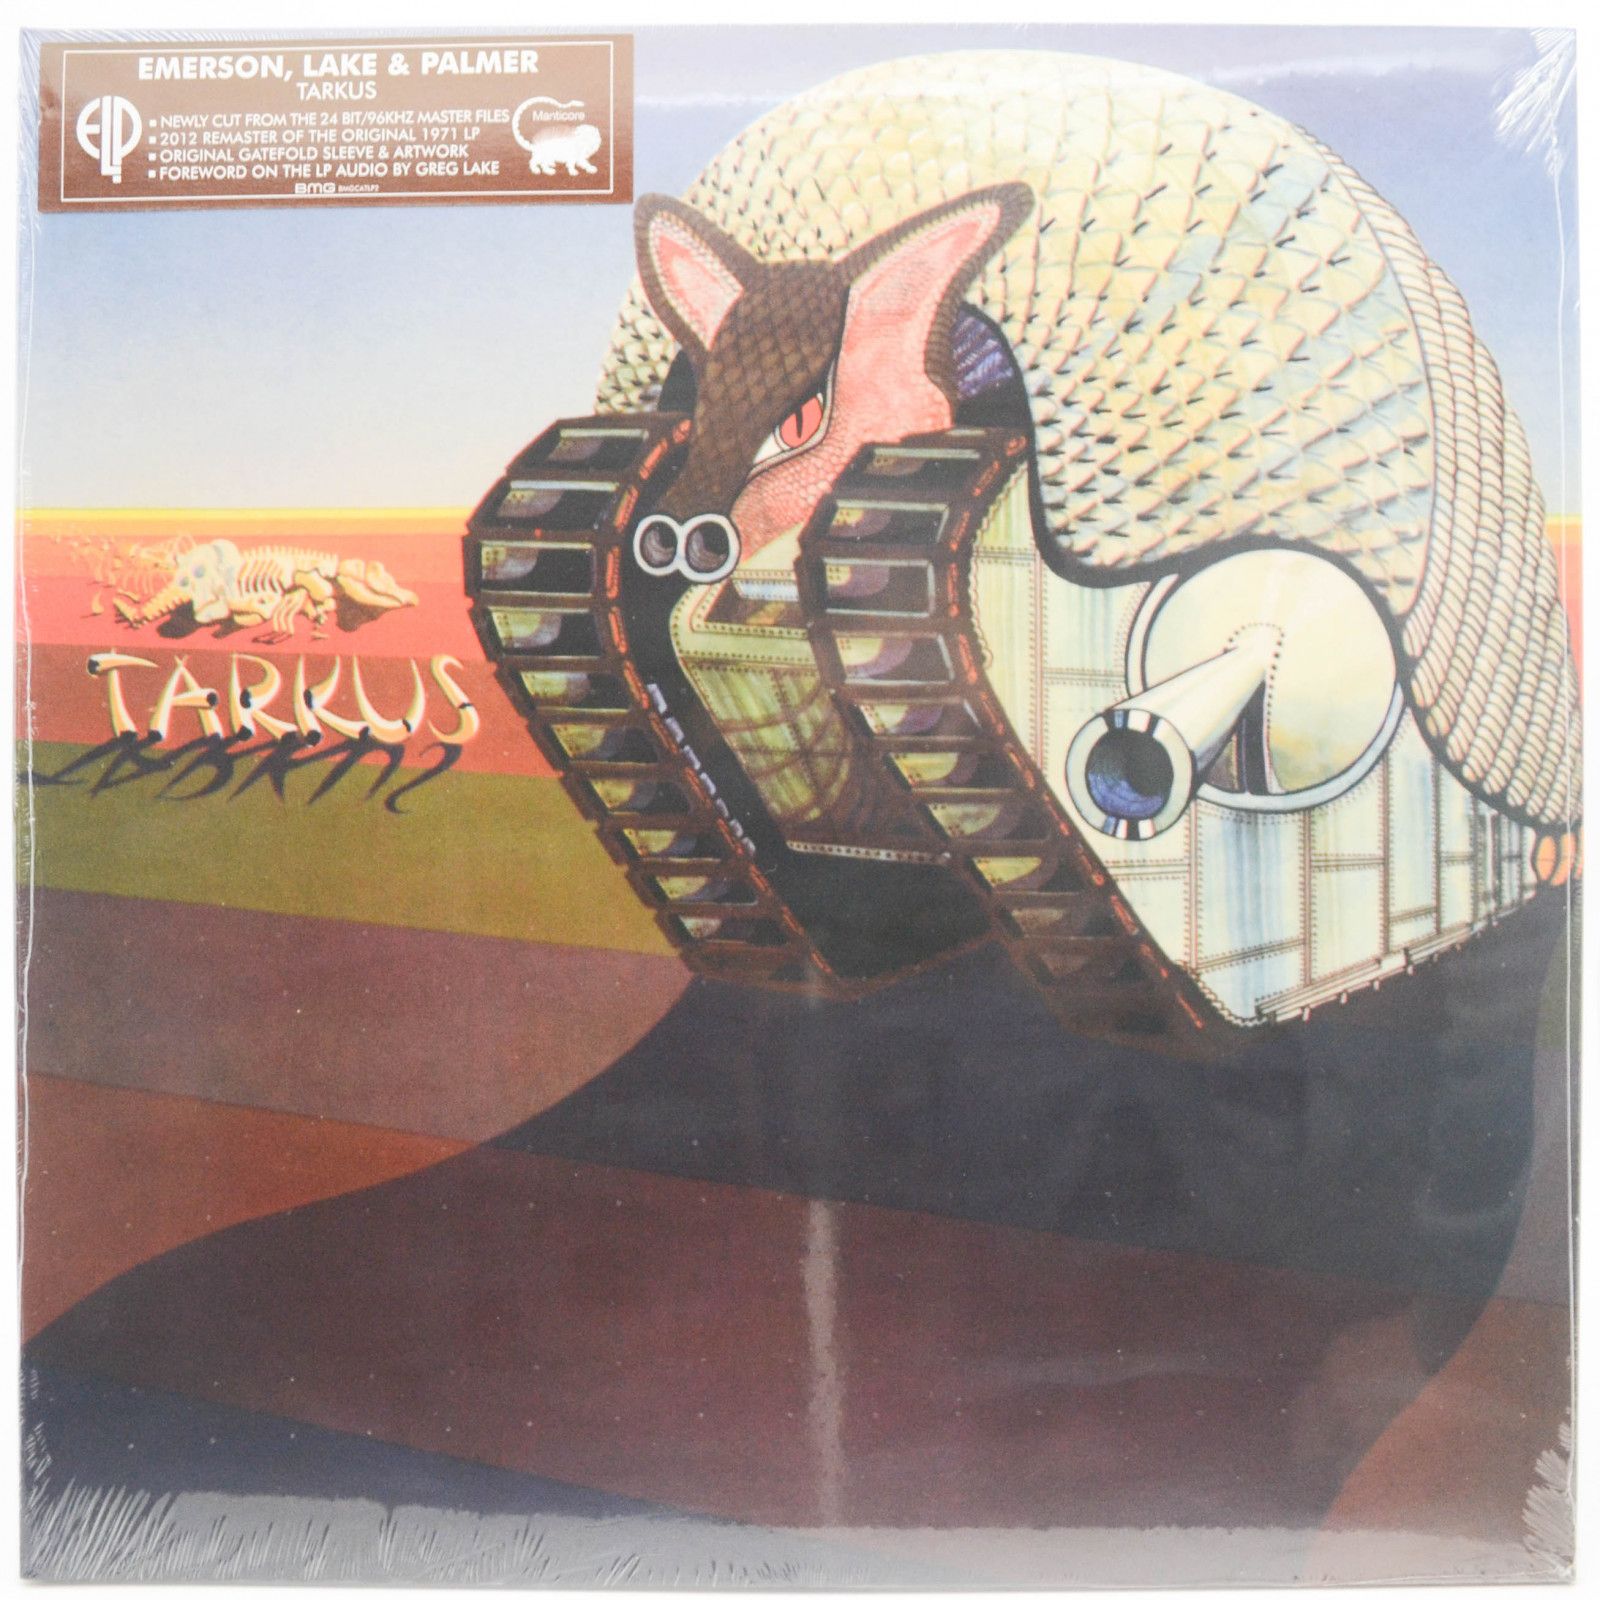 Emerson, Lake & Palmer — Tarkus, 1971